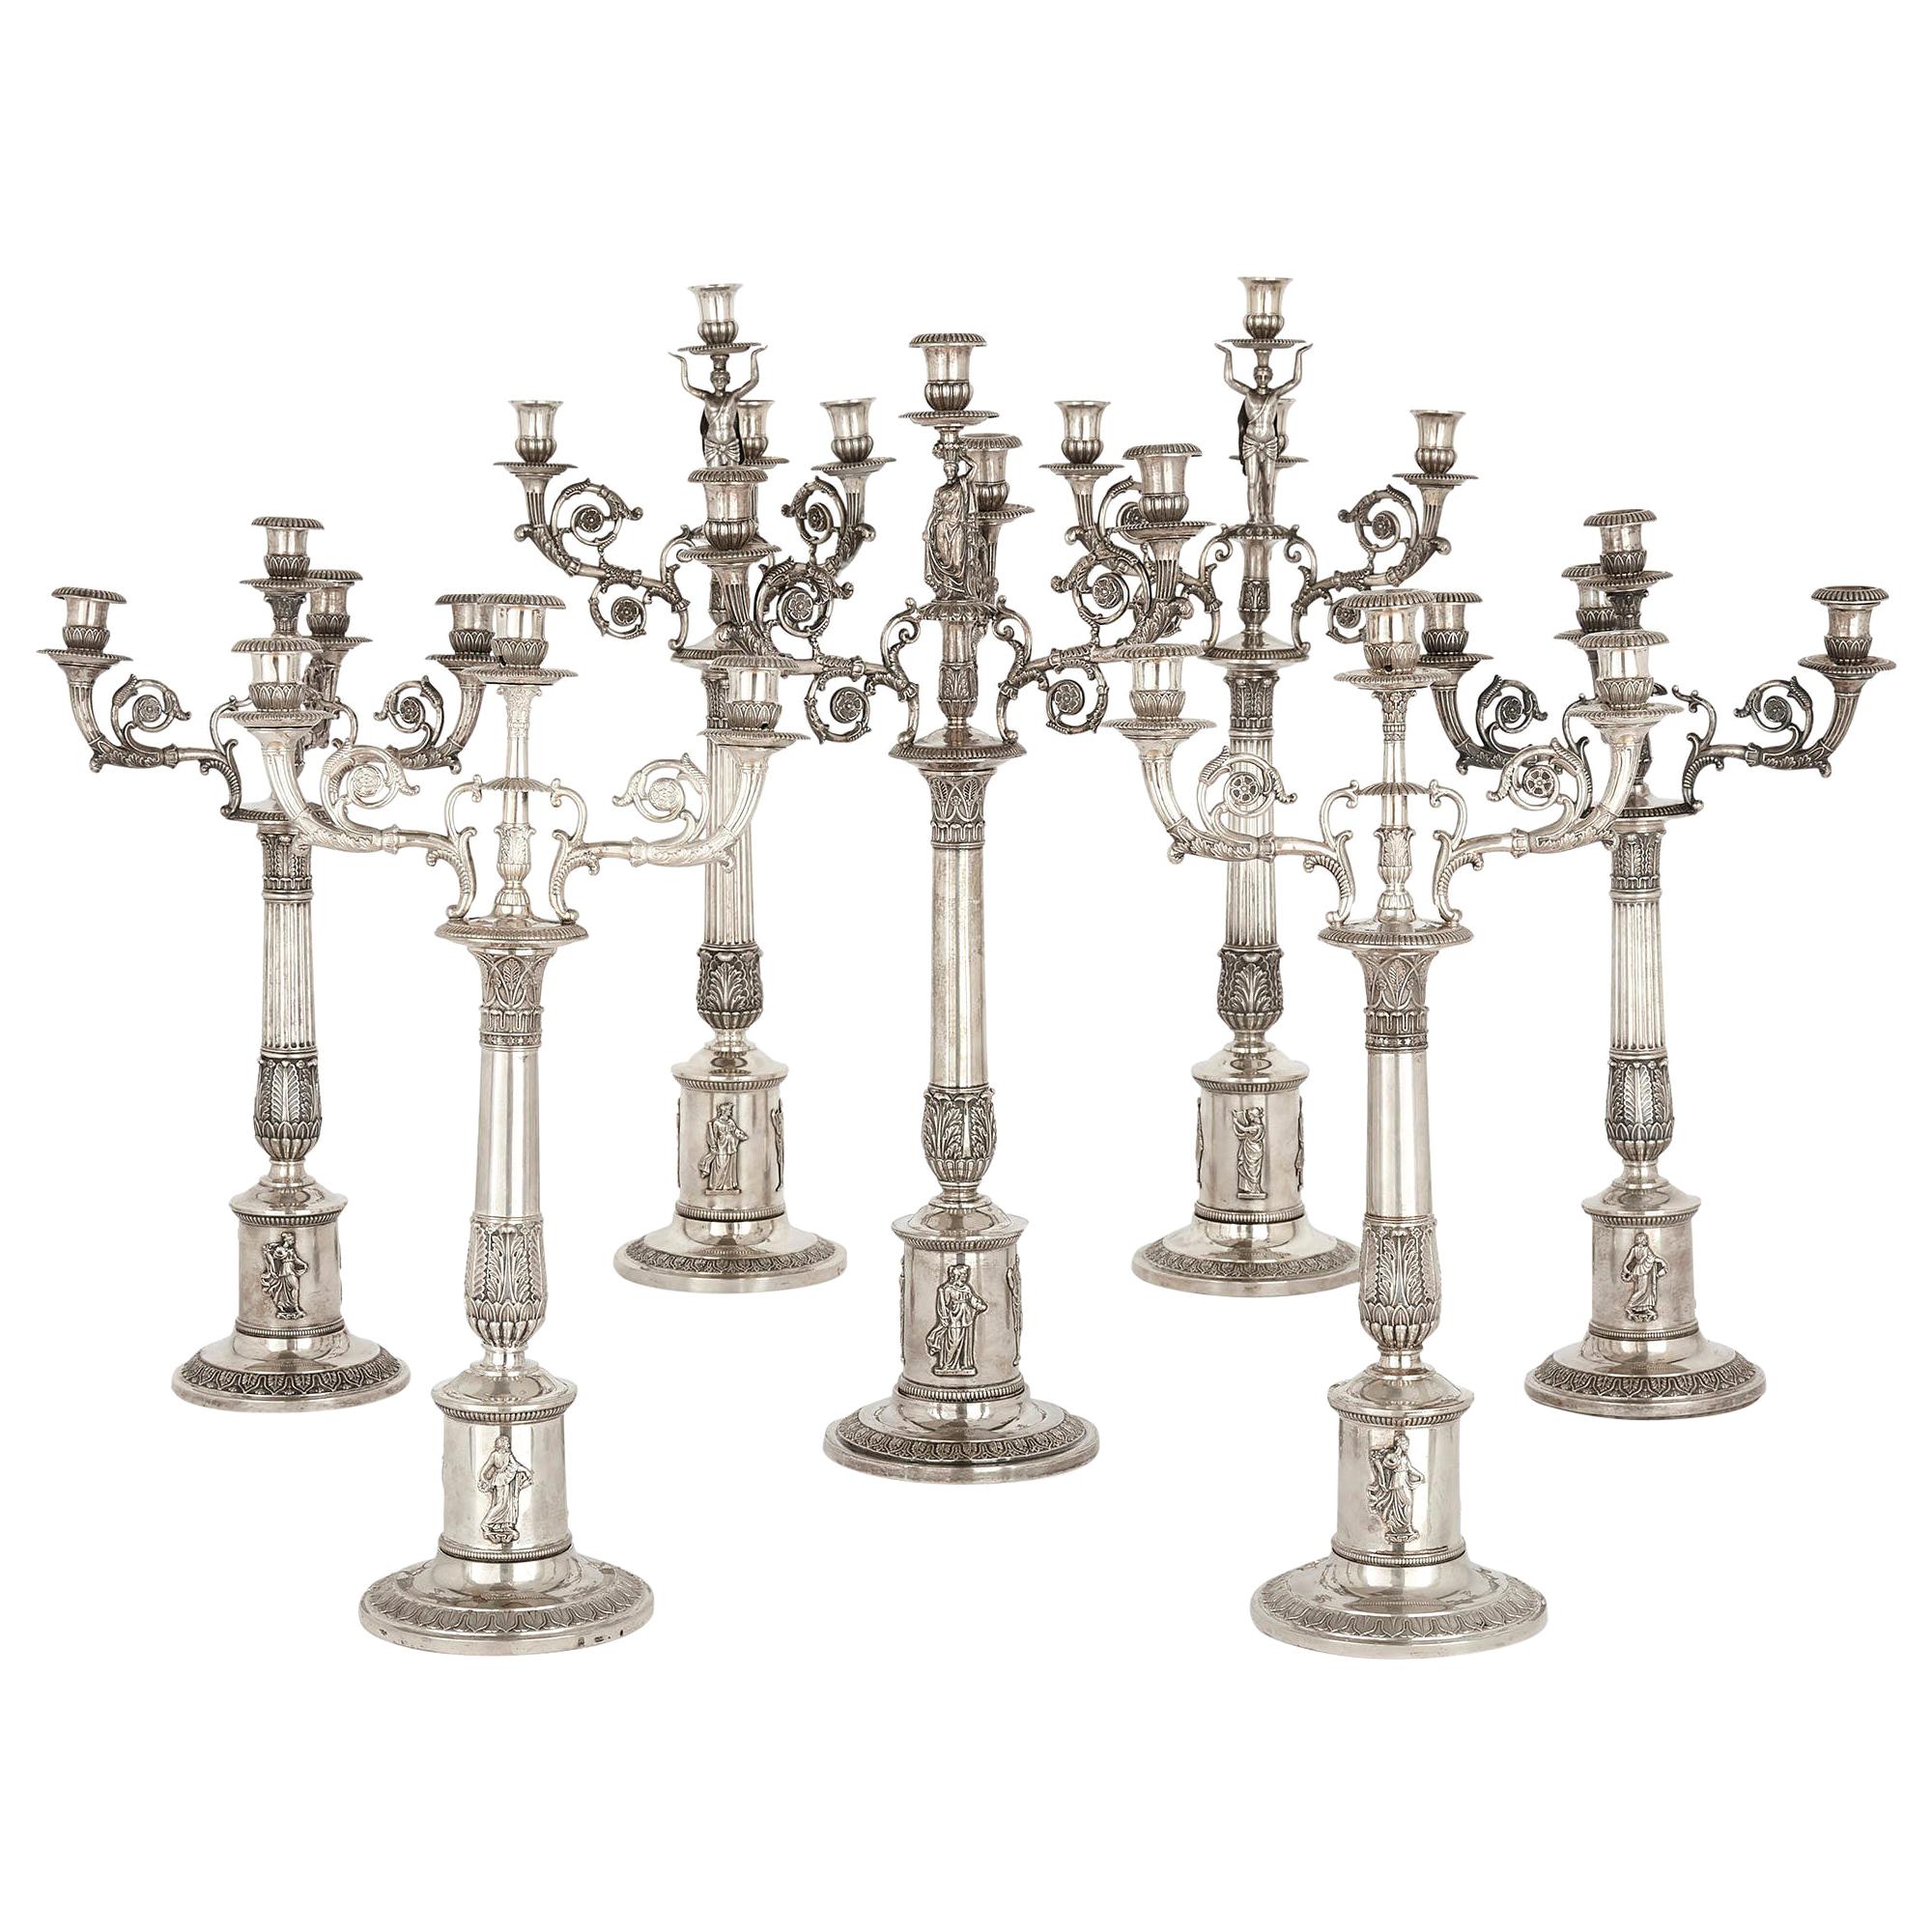 Juego de candelabros de plata de siete piezas de la época imperial alemana